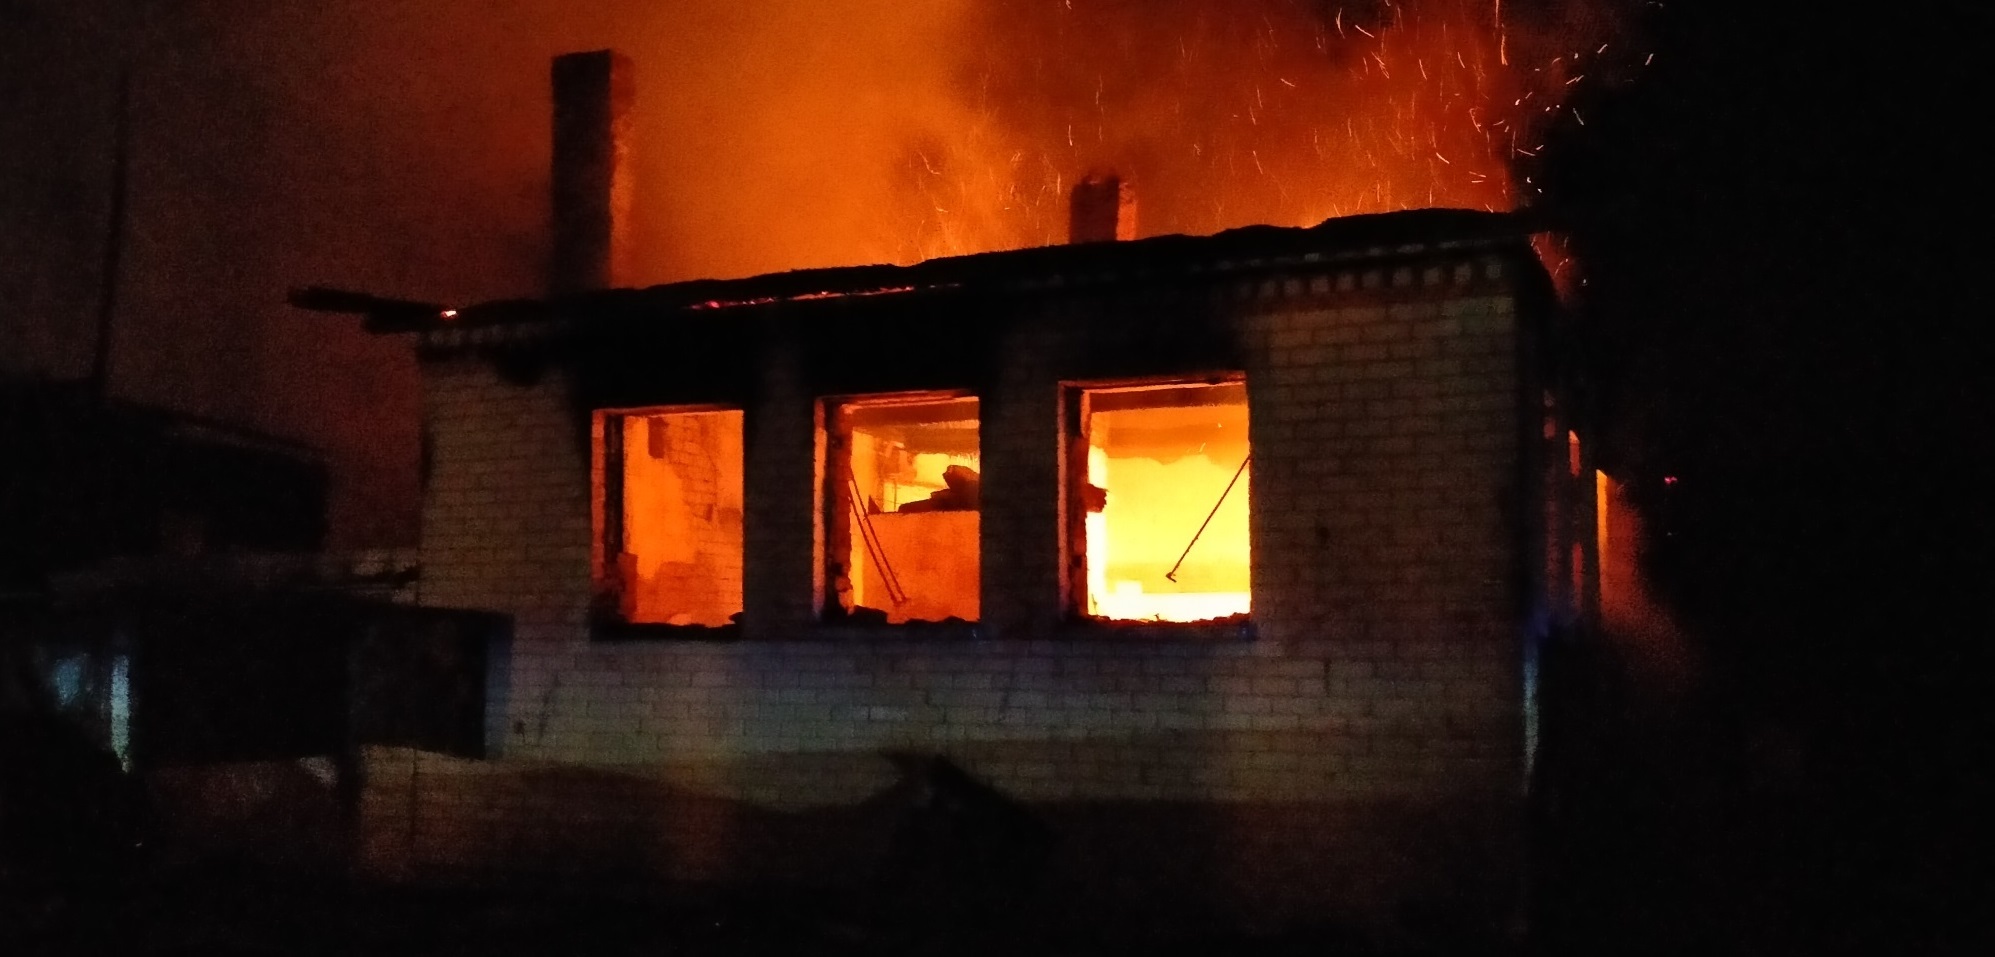 Отец и сын погибли при пожаре в Оршанском районе Марий Эл